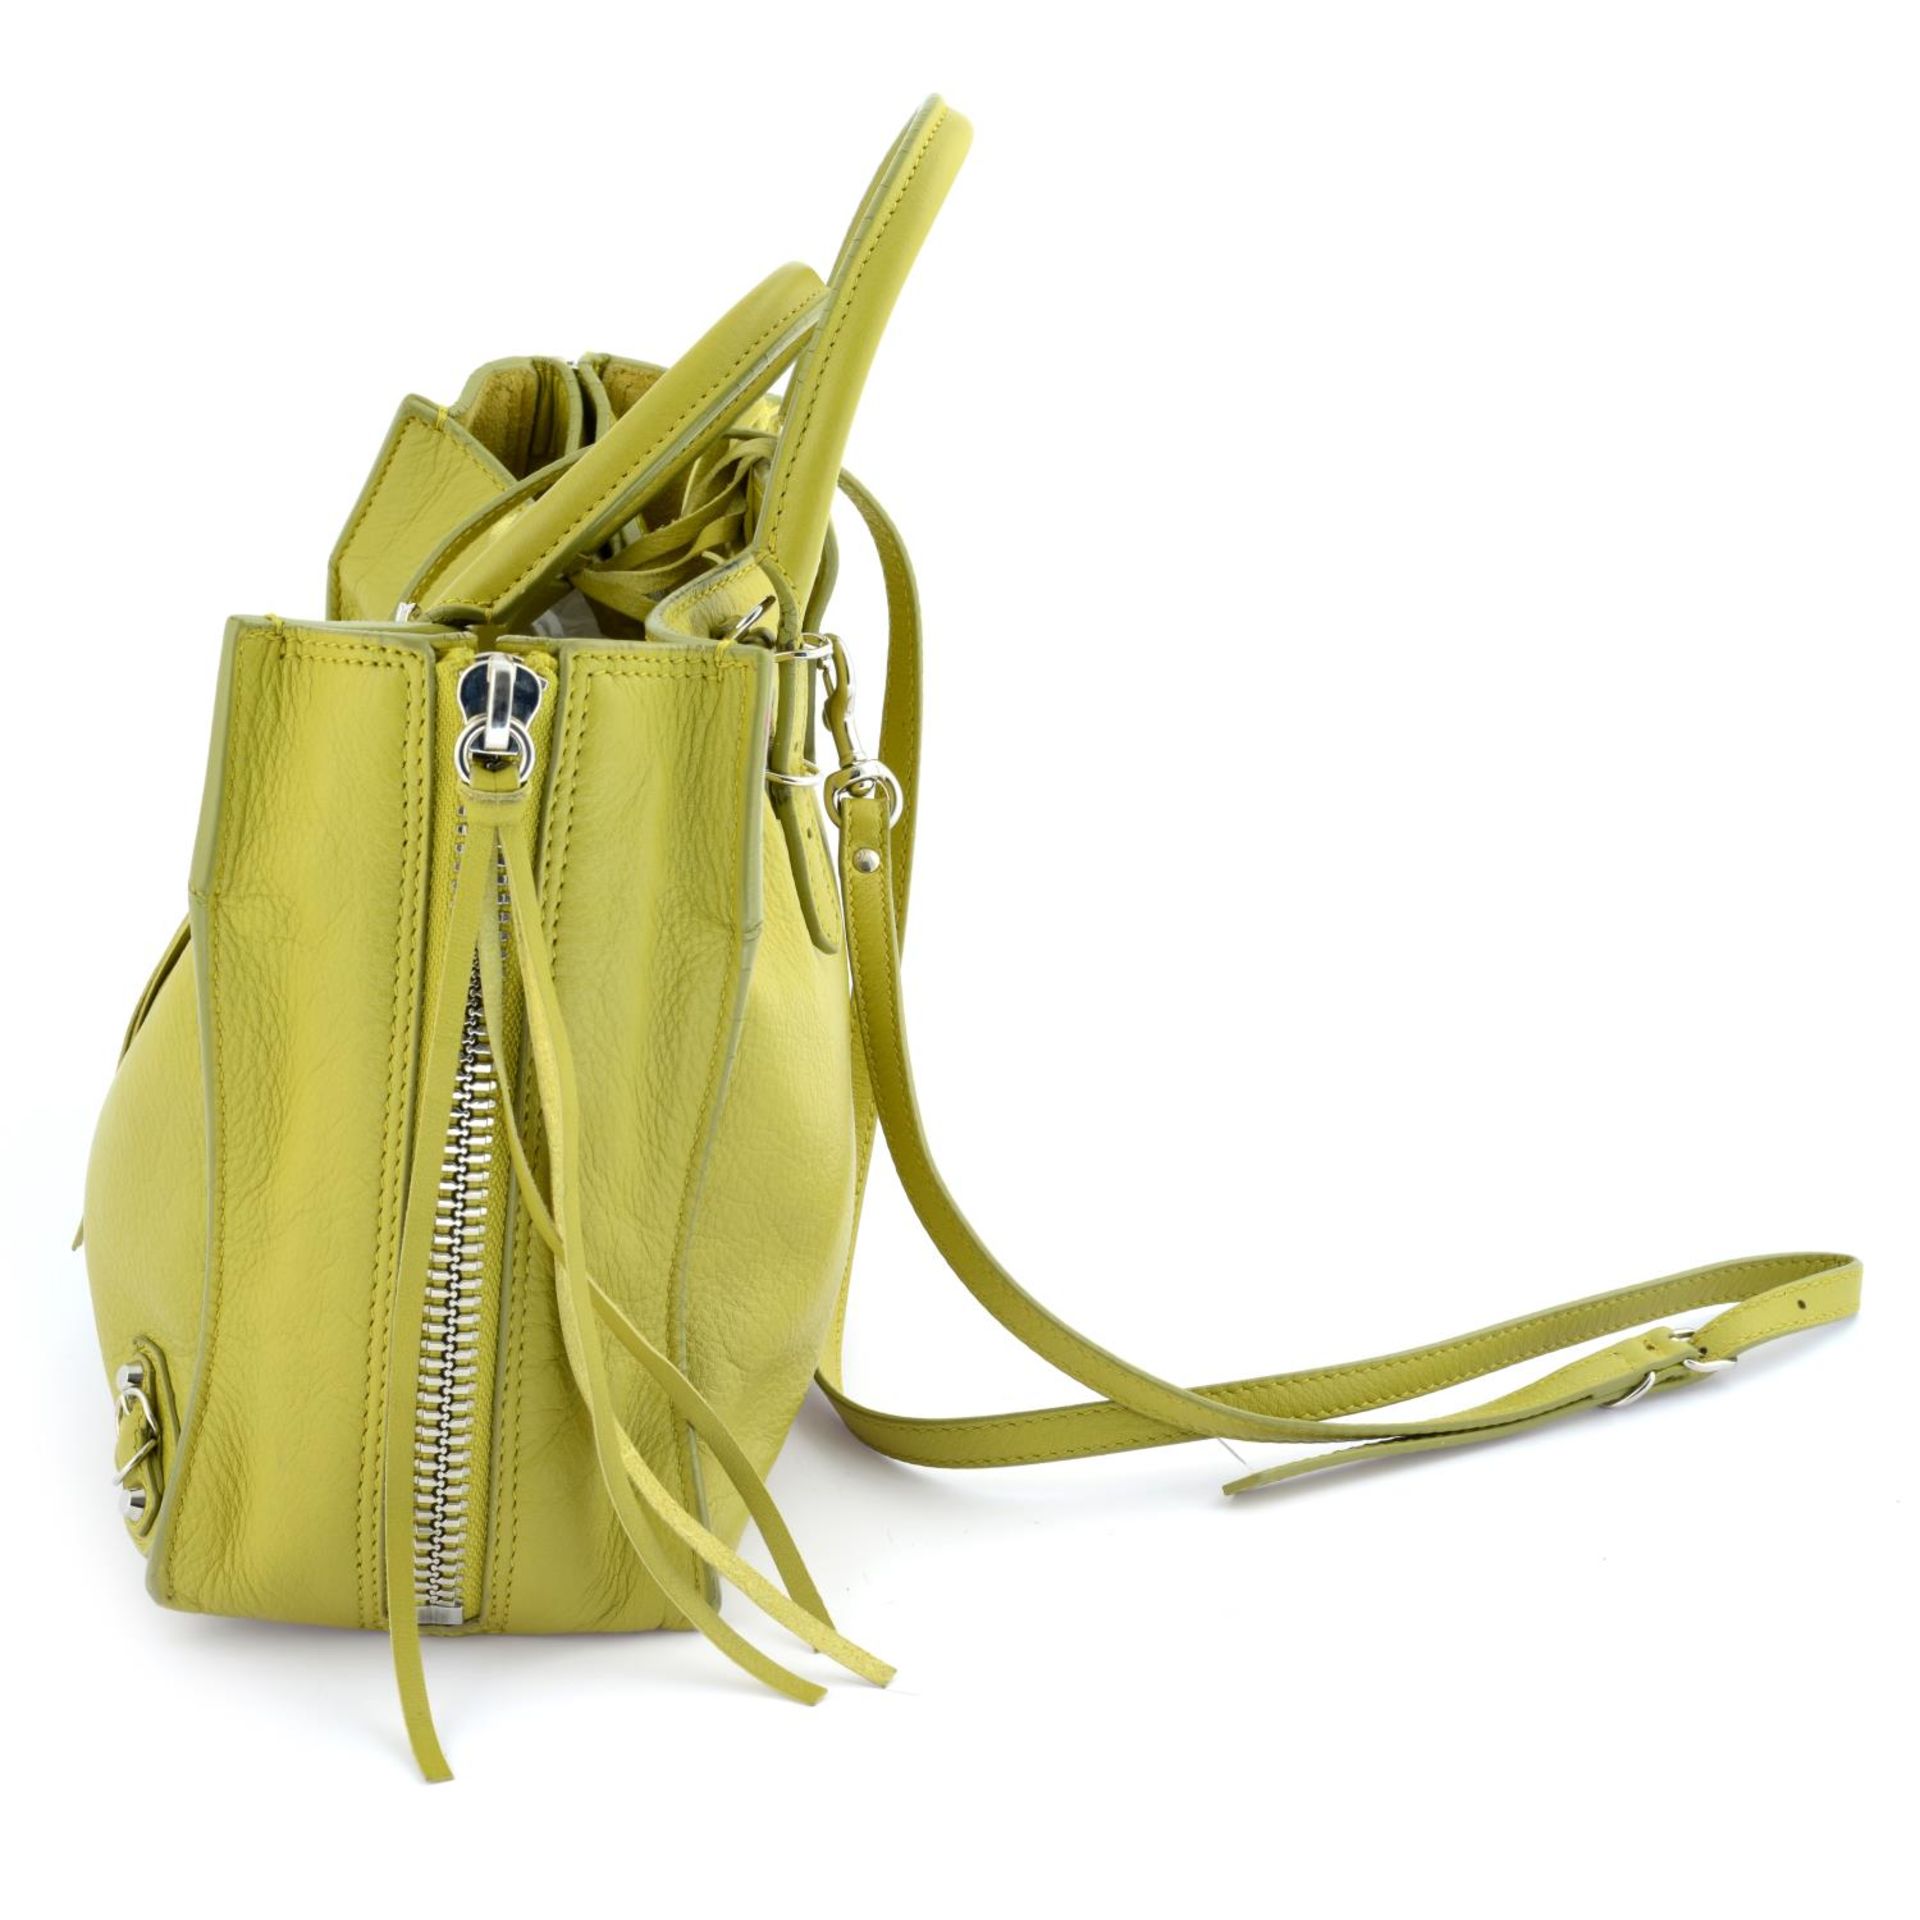 BALENCIAGA - a chartreuse leather Papier A6 handbag. - Image 3 of 7